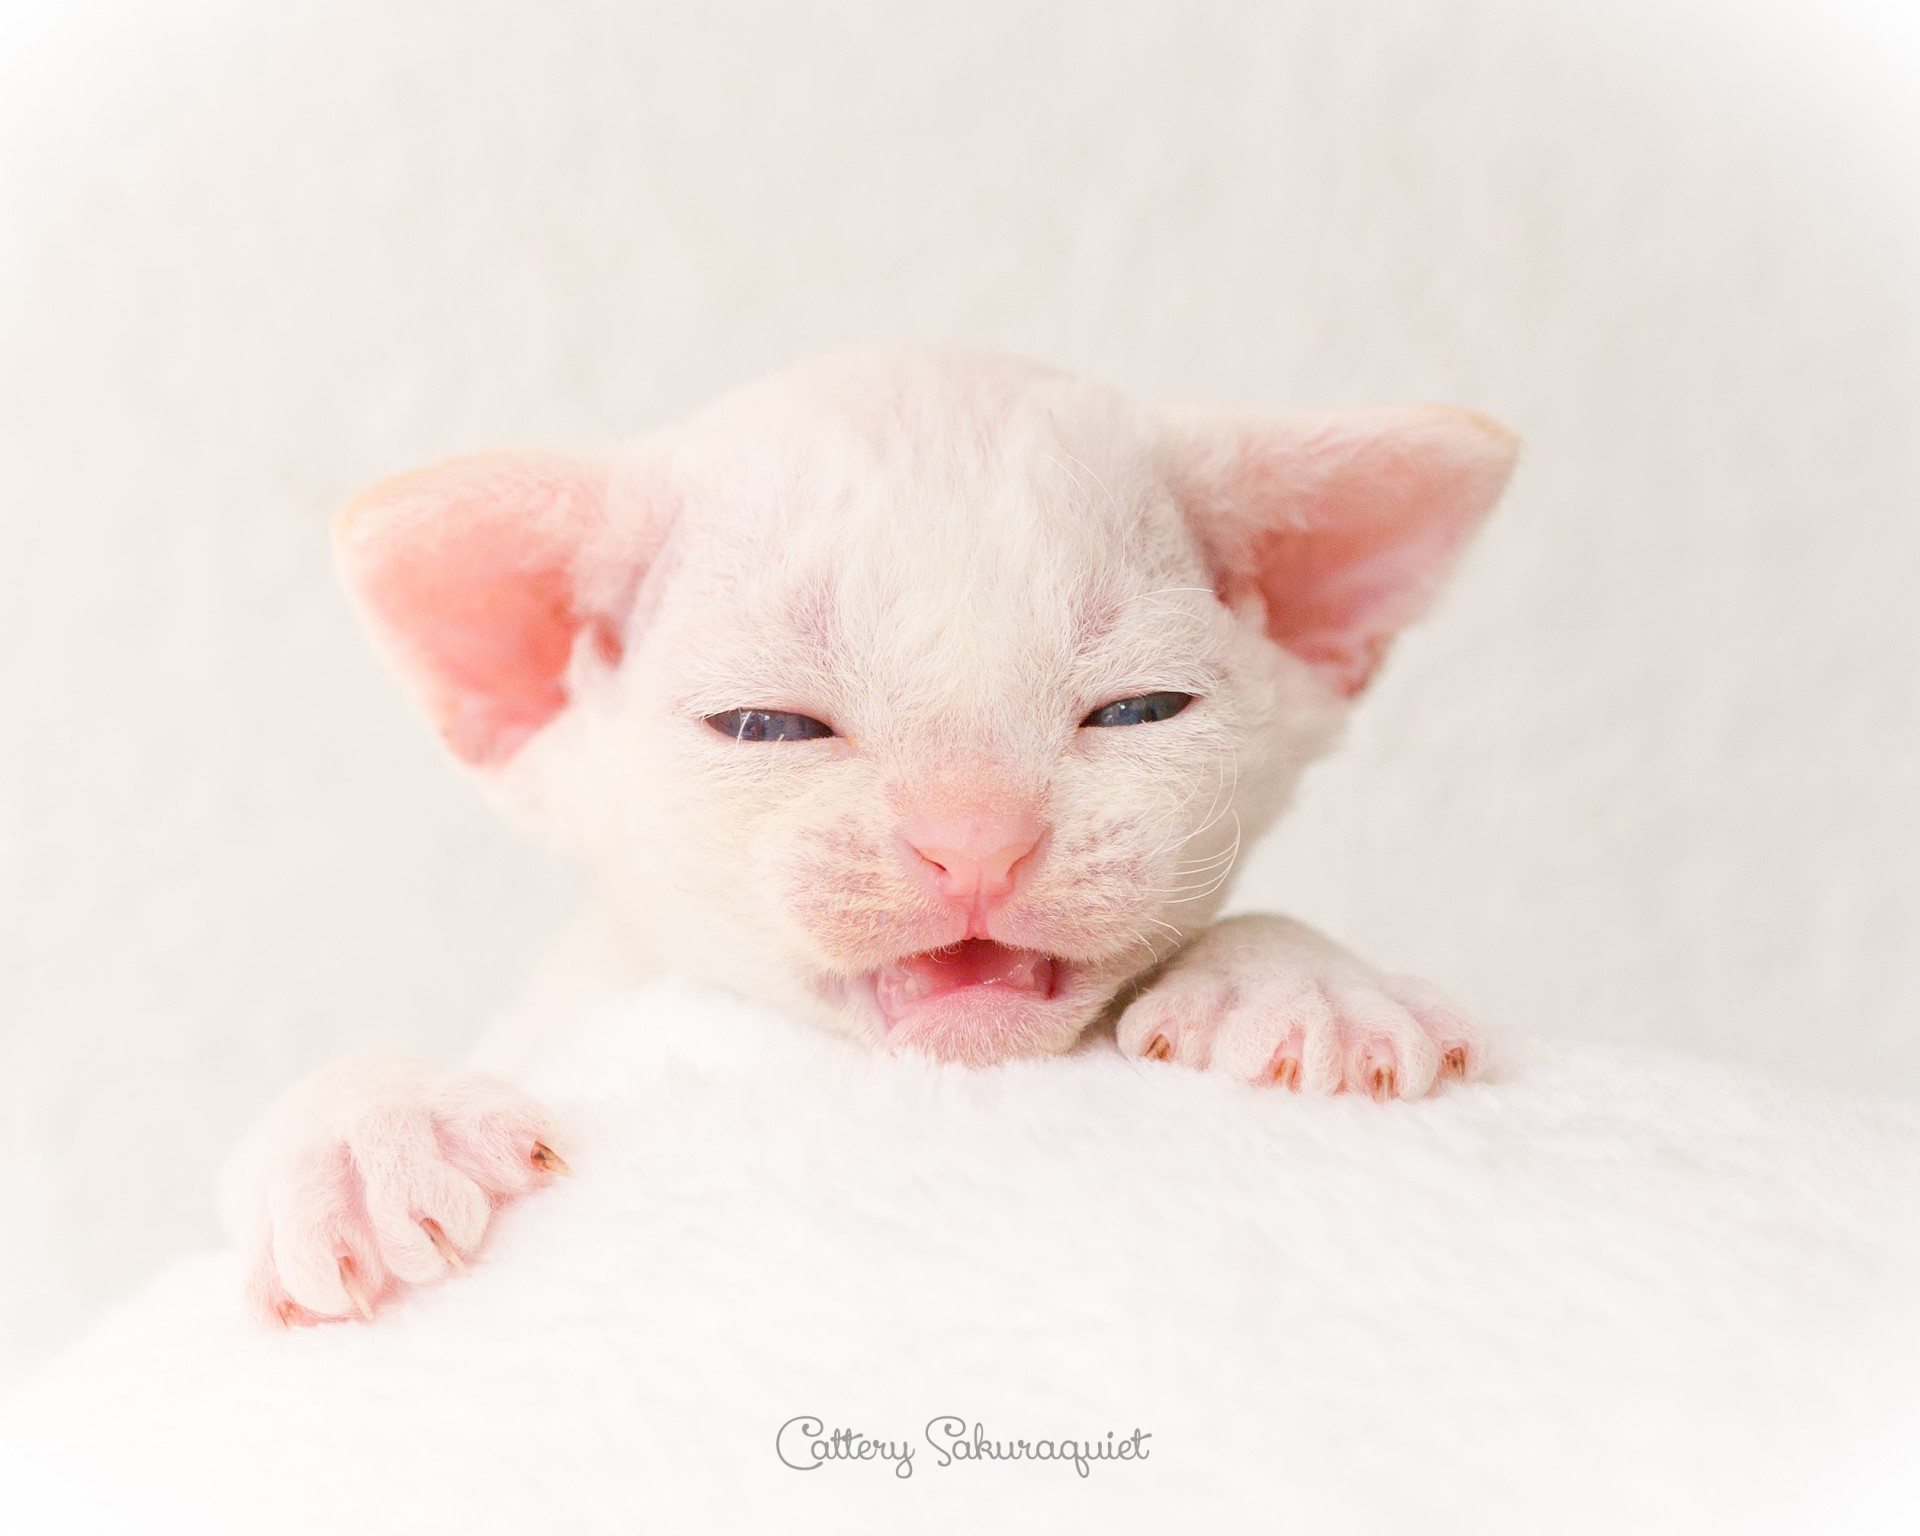 デボンレックス SNIPの仔猫 レッドリンクスポイント&ホワイト オス Devon Rex Kittens SNIP Red lynx point&white male